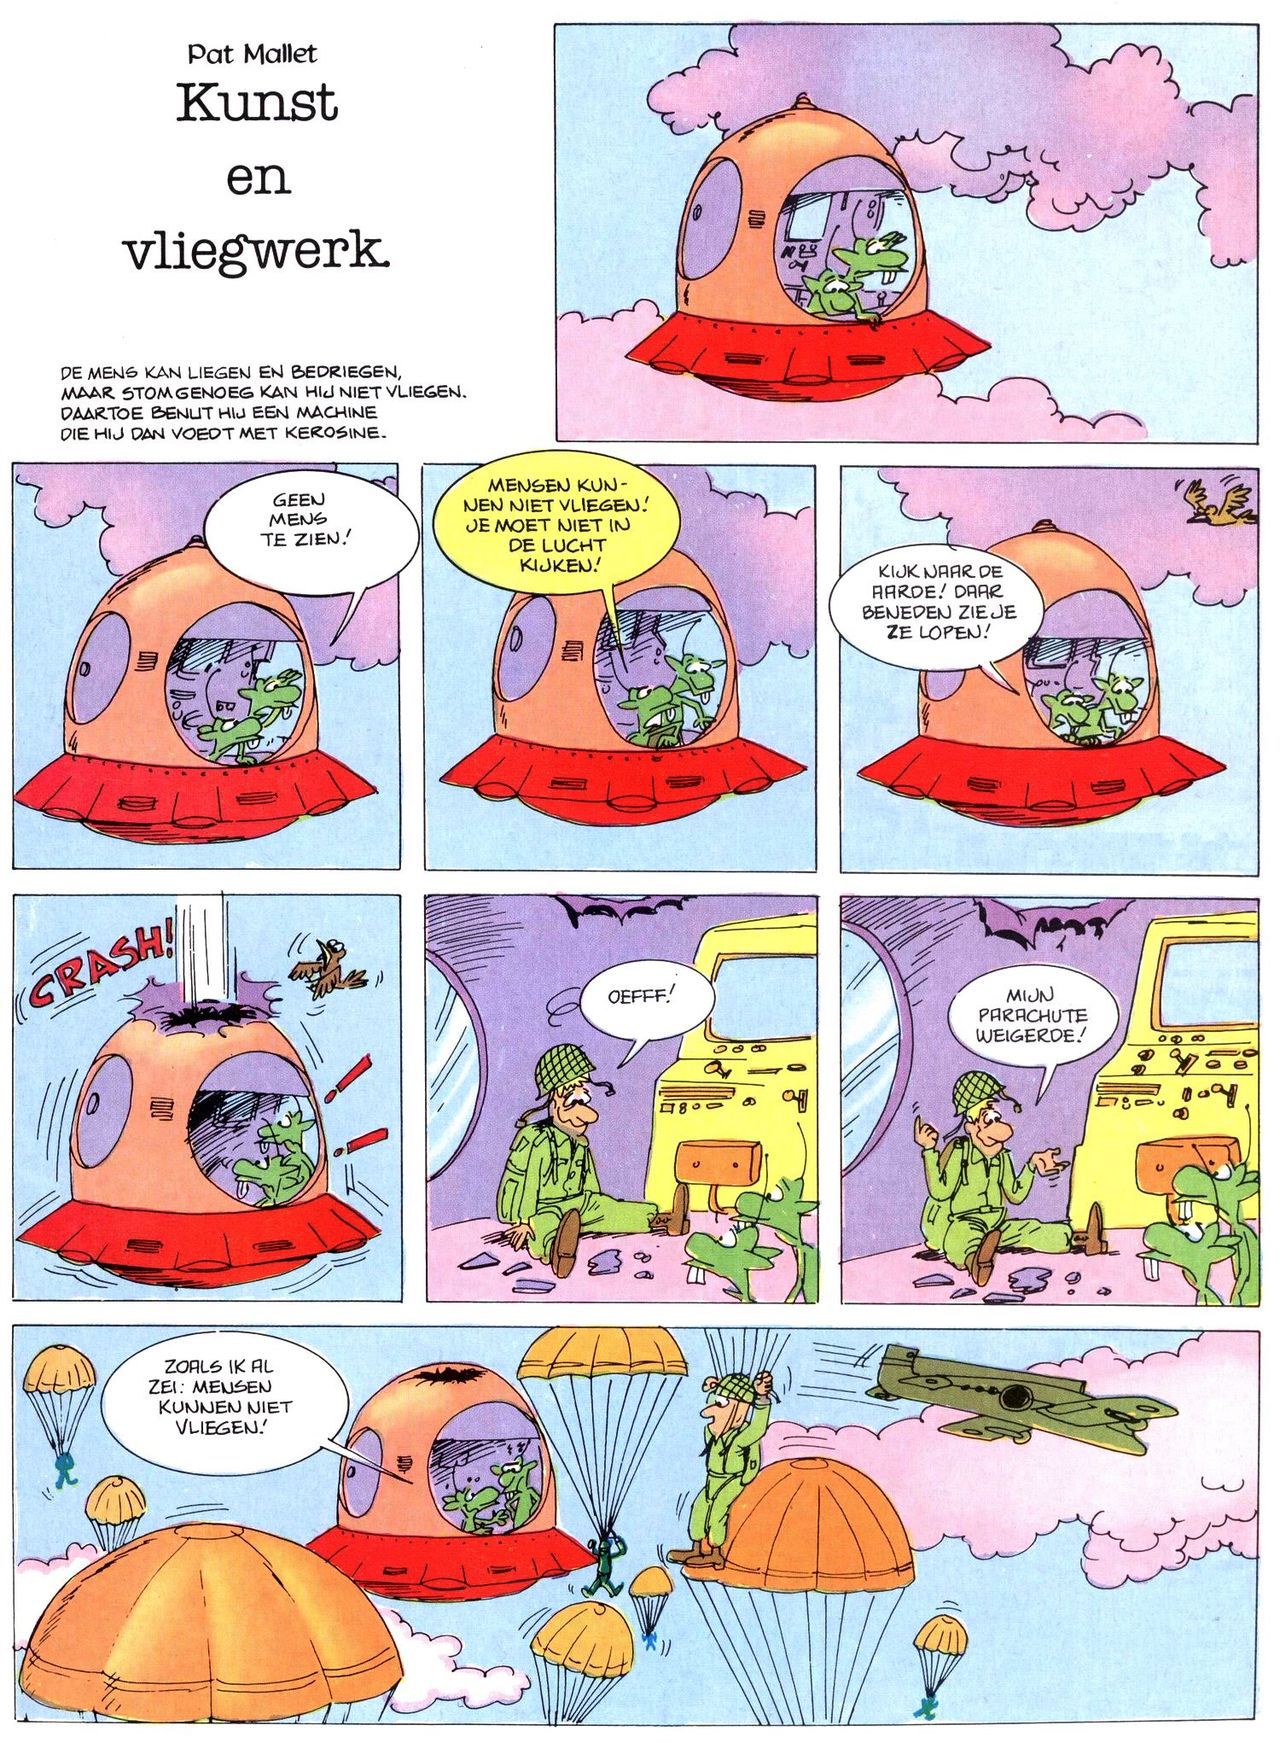 Het Is Groen En Het.. - 02 - Verboden Op Het Gras Te Lopen (Dutch) Een oude humoristische serie van Pat Mallet 37